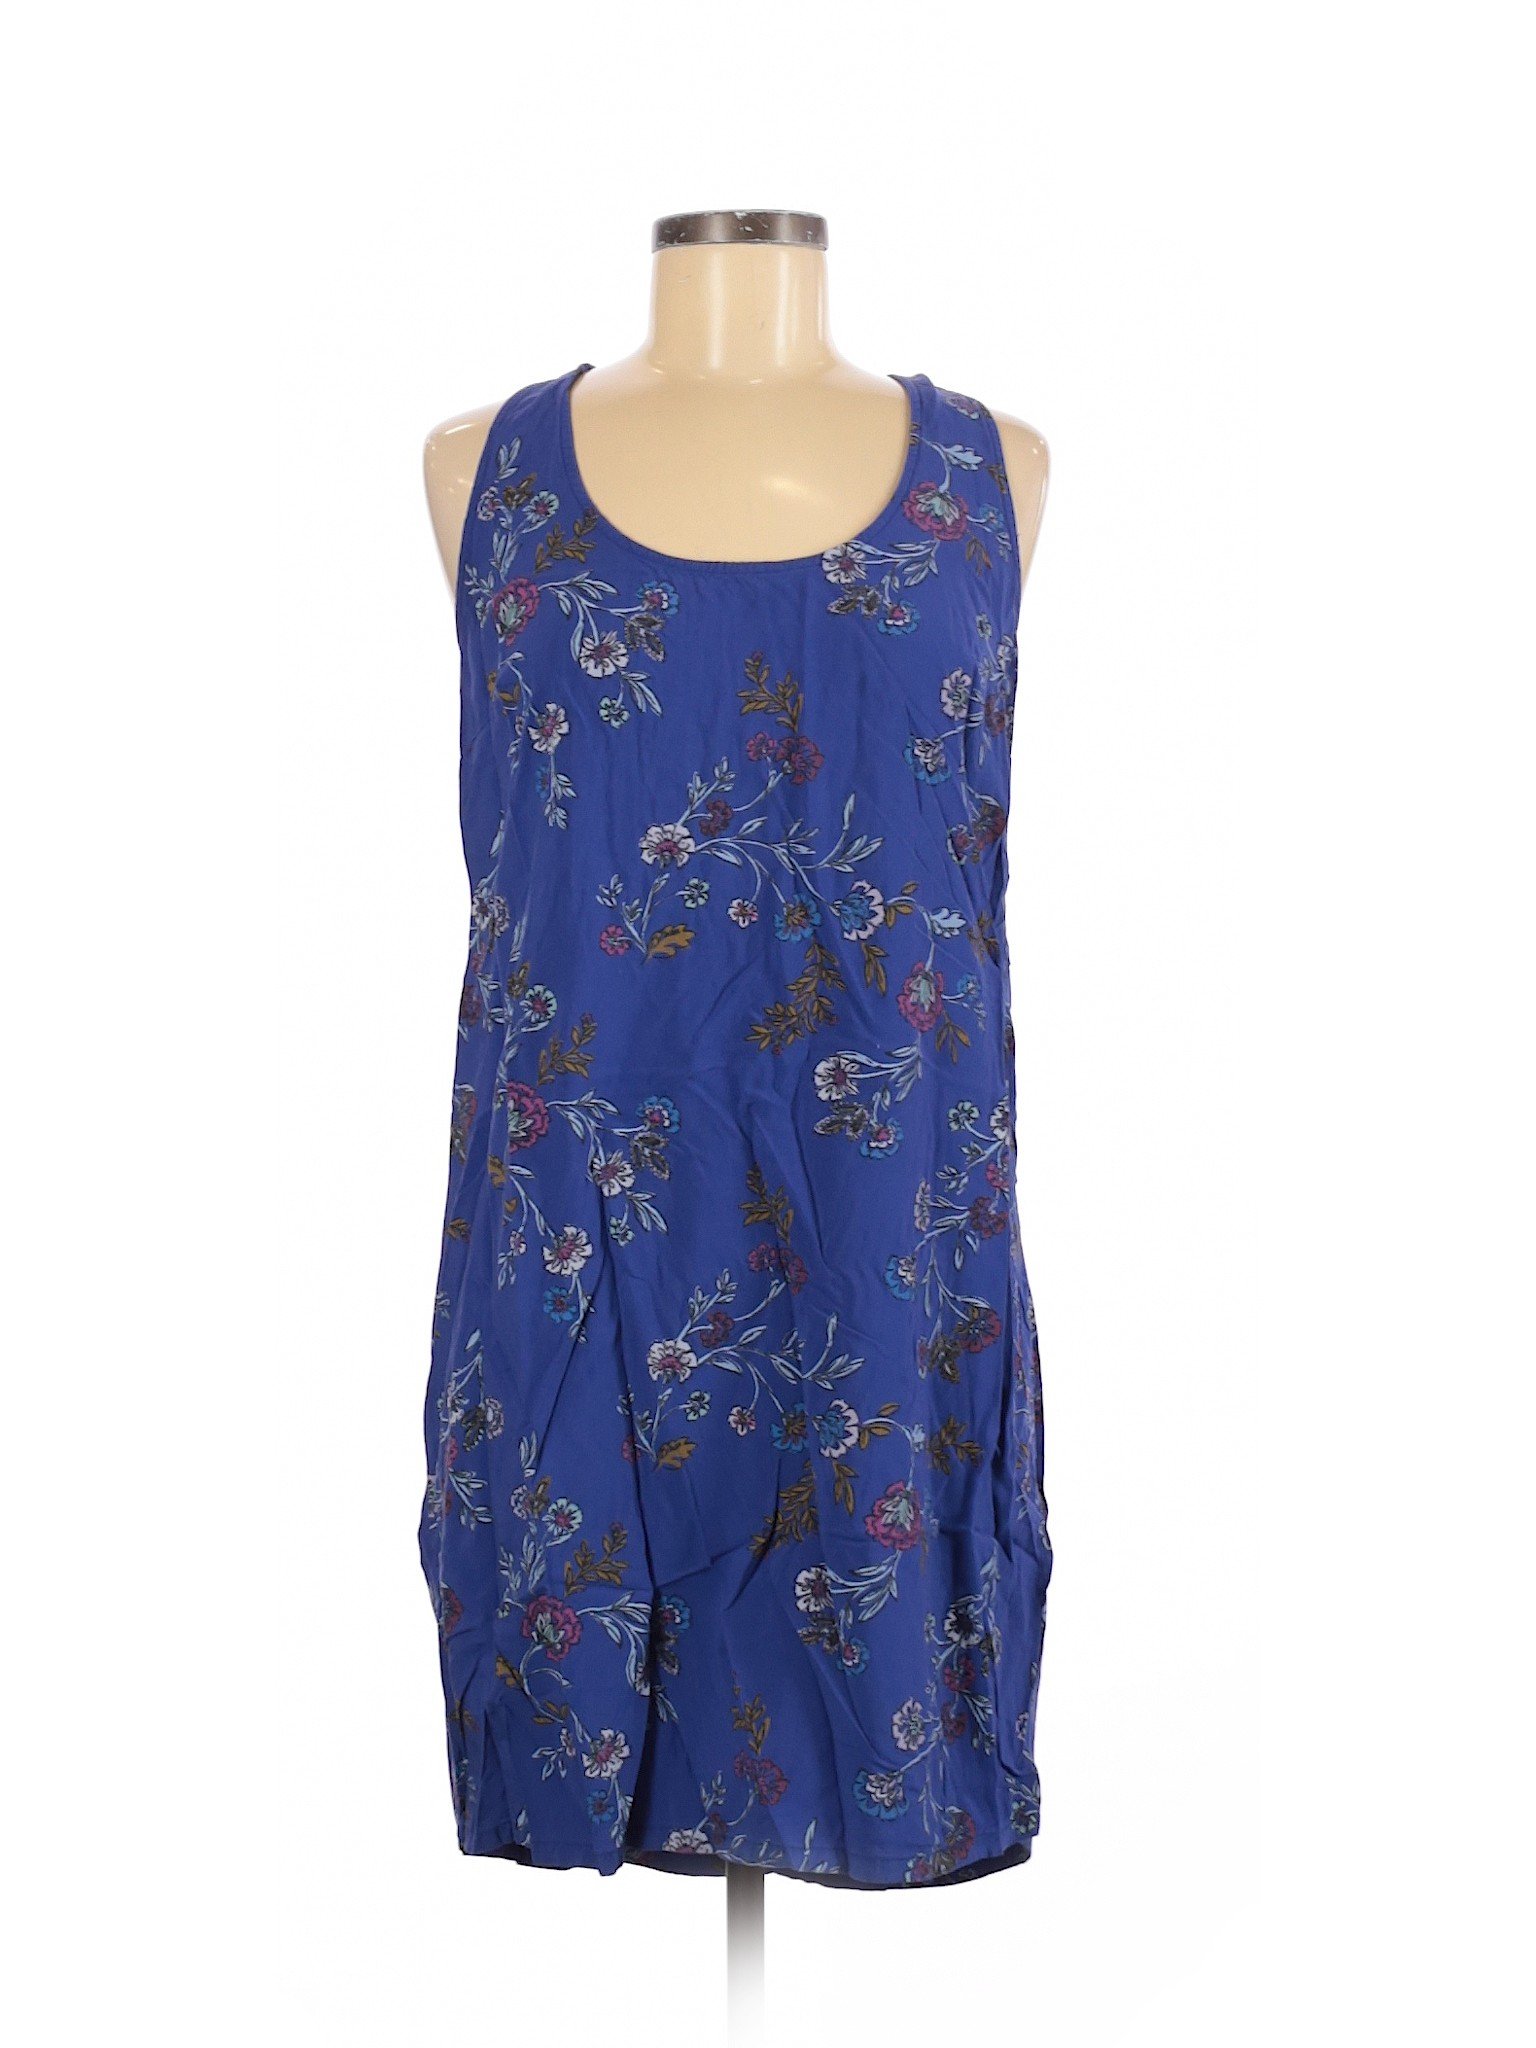 Old Navy Women Blue Casual Dress M | eBay